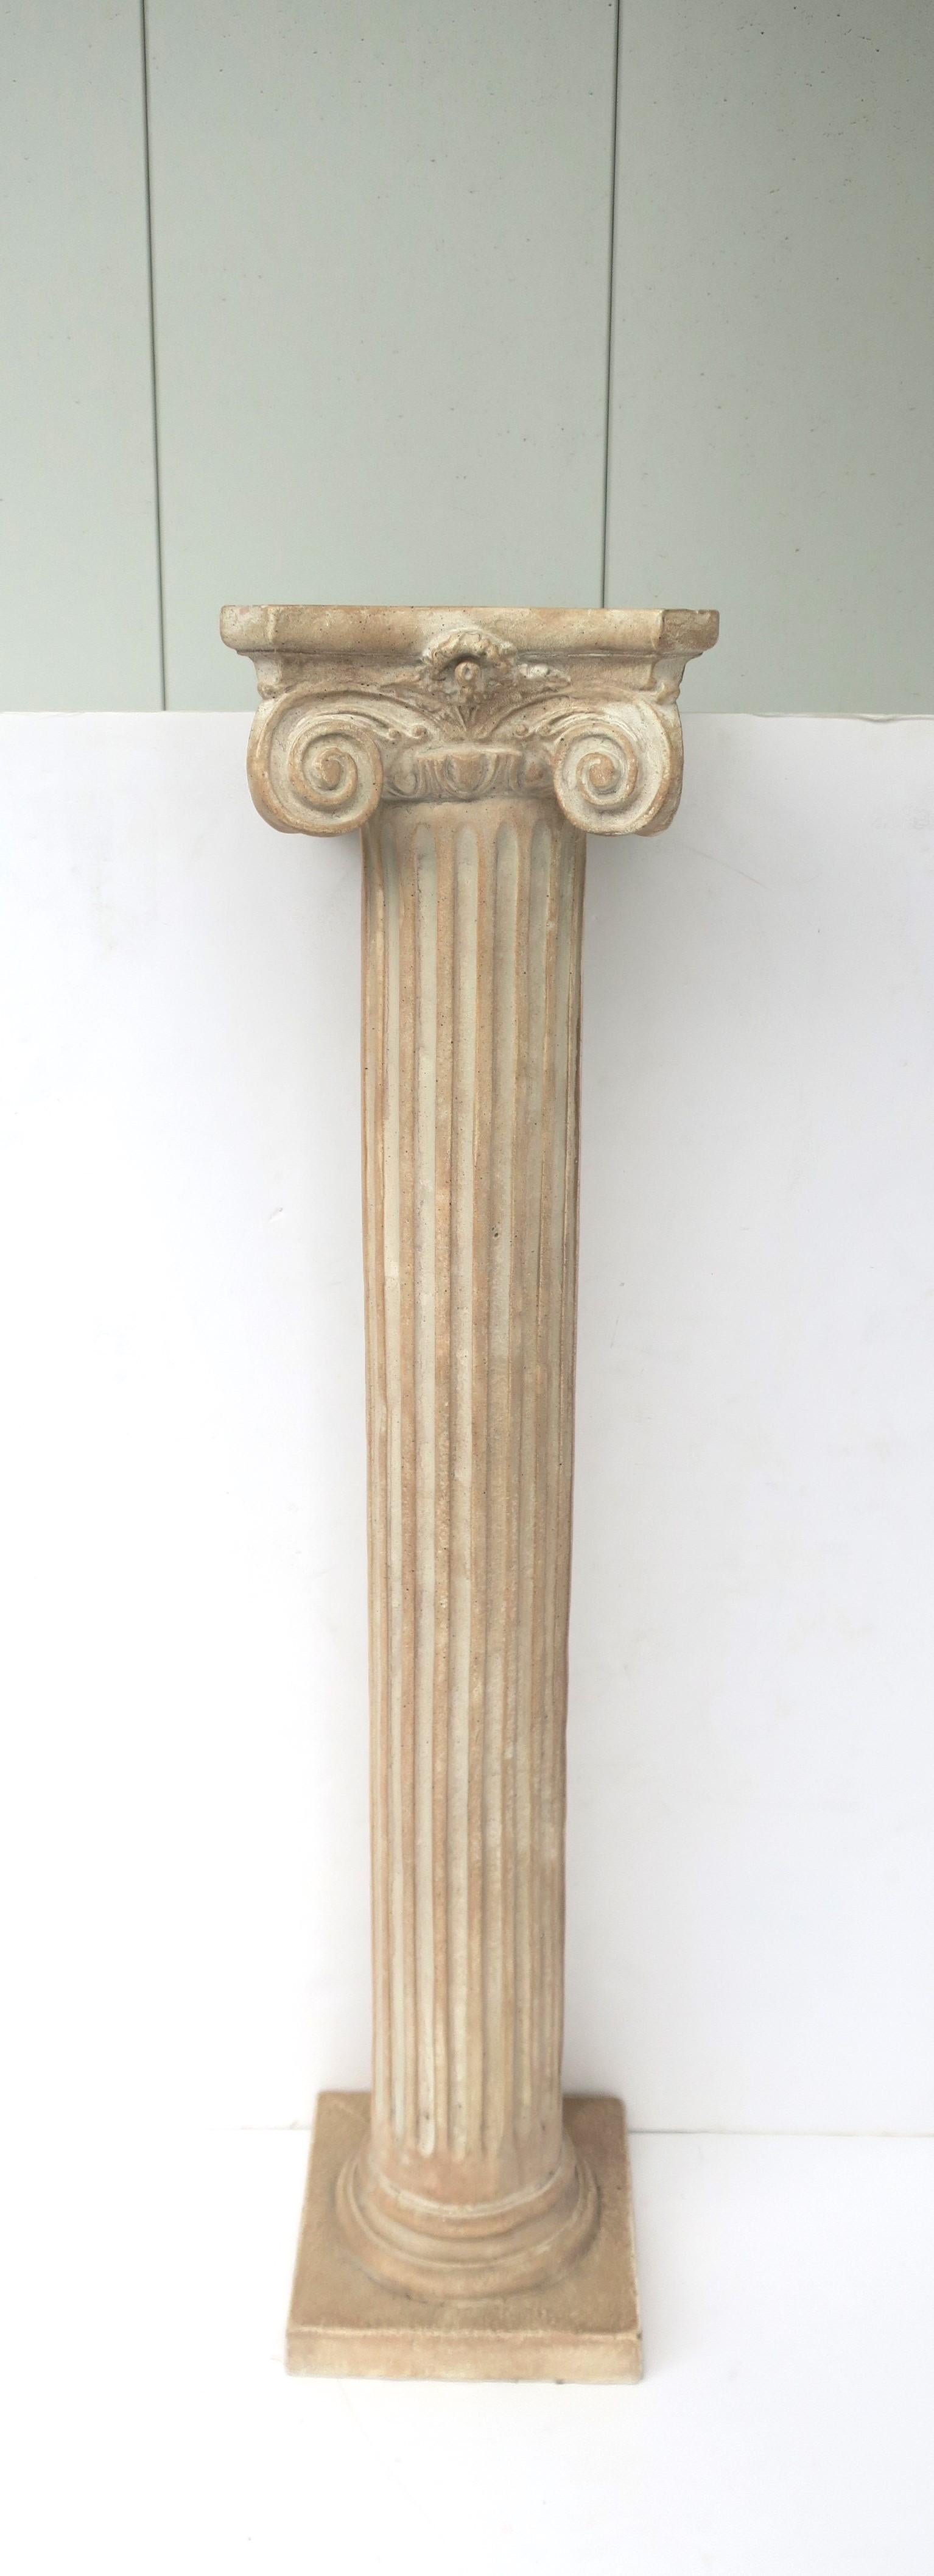 Piédestal à colonne ionique avec pilier cannelé et base carrée dans le style néoclassique gréco-romain, vers la fin du XXe siècle, 1982. La colonne a un poids agréable ; elle est conçue à partir d'un matériau composite qui ressemble à de la pierre.